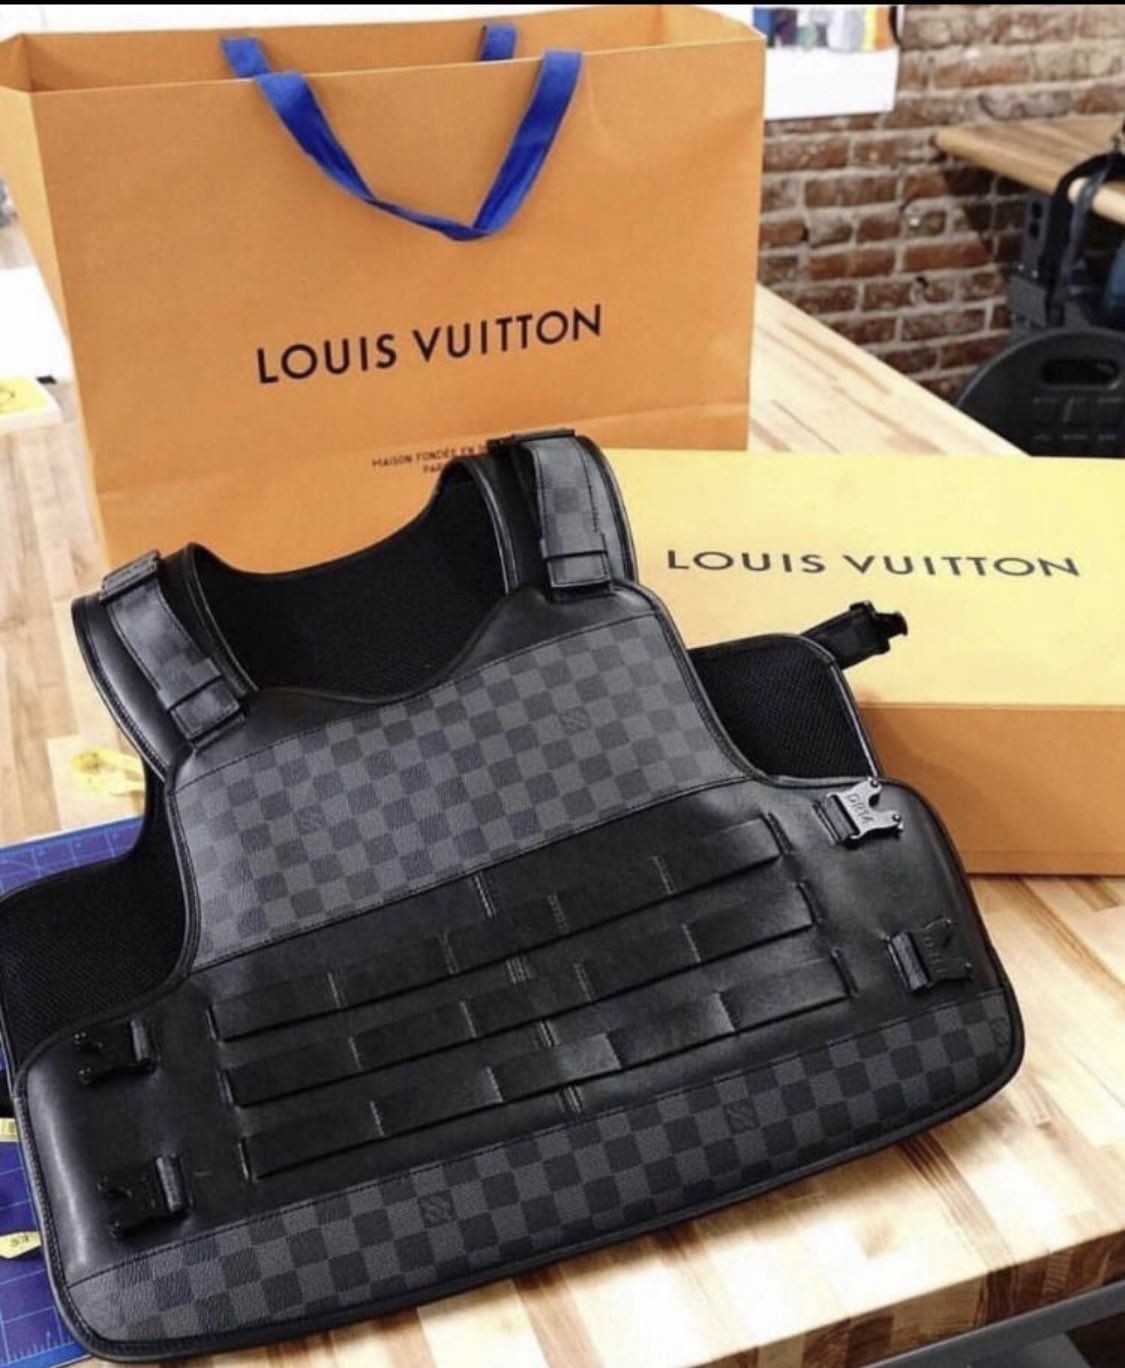 Louis vuitton bullet proof vest